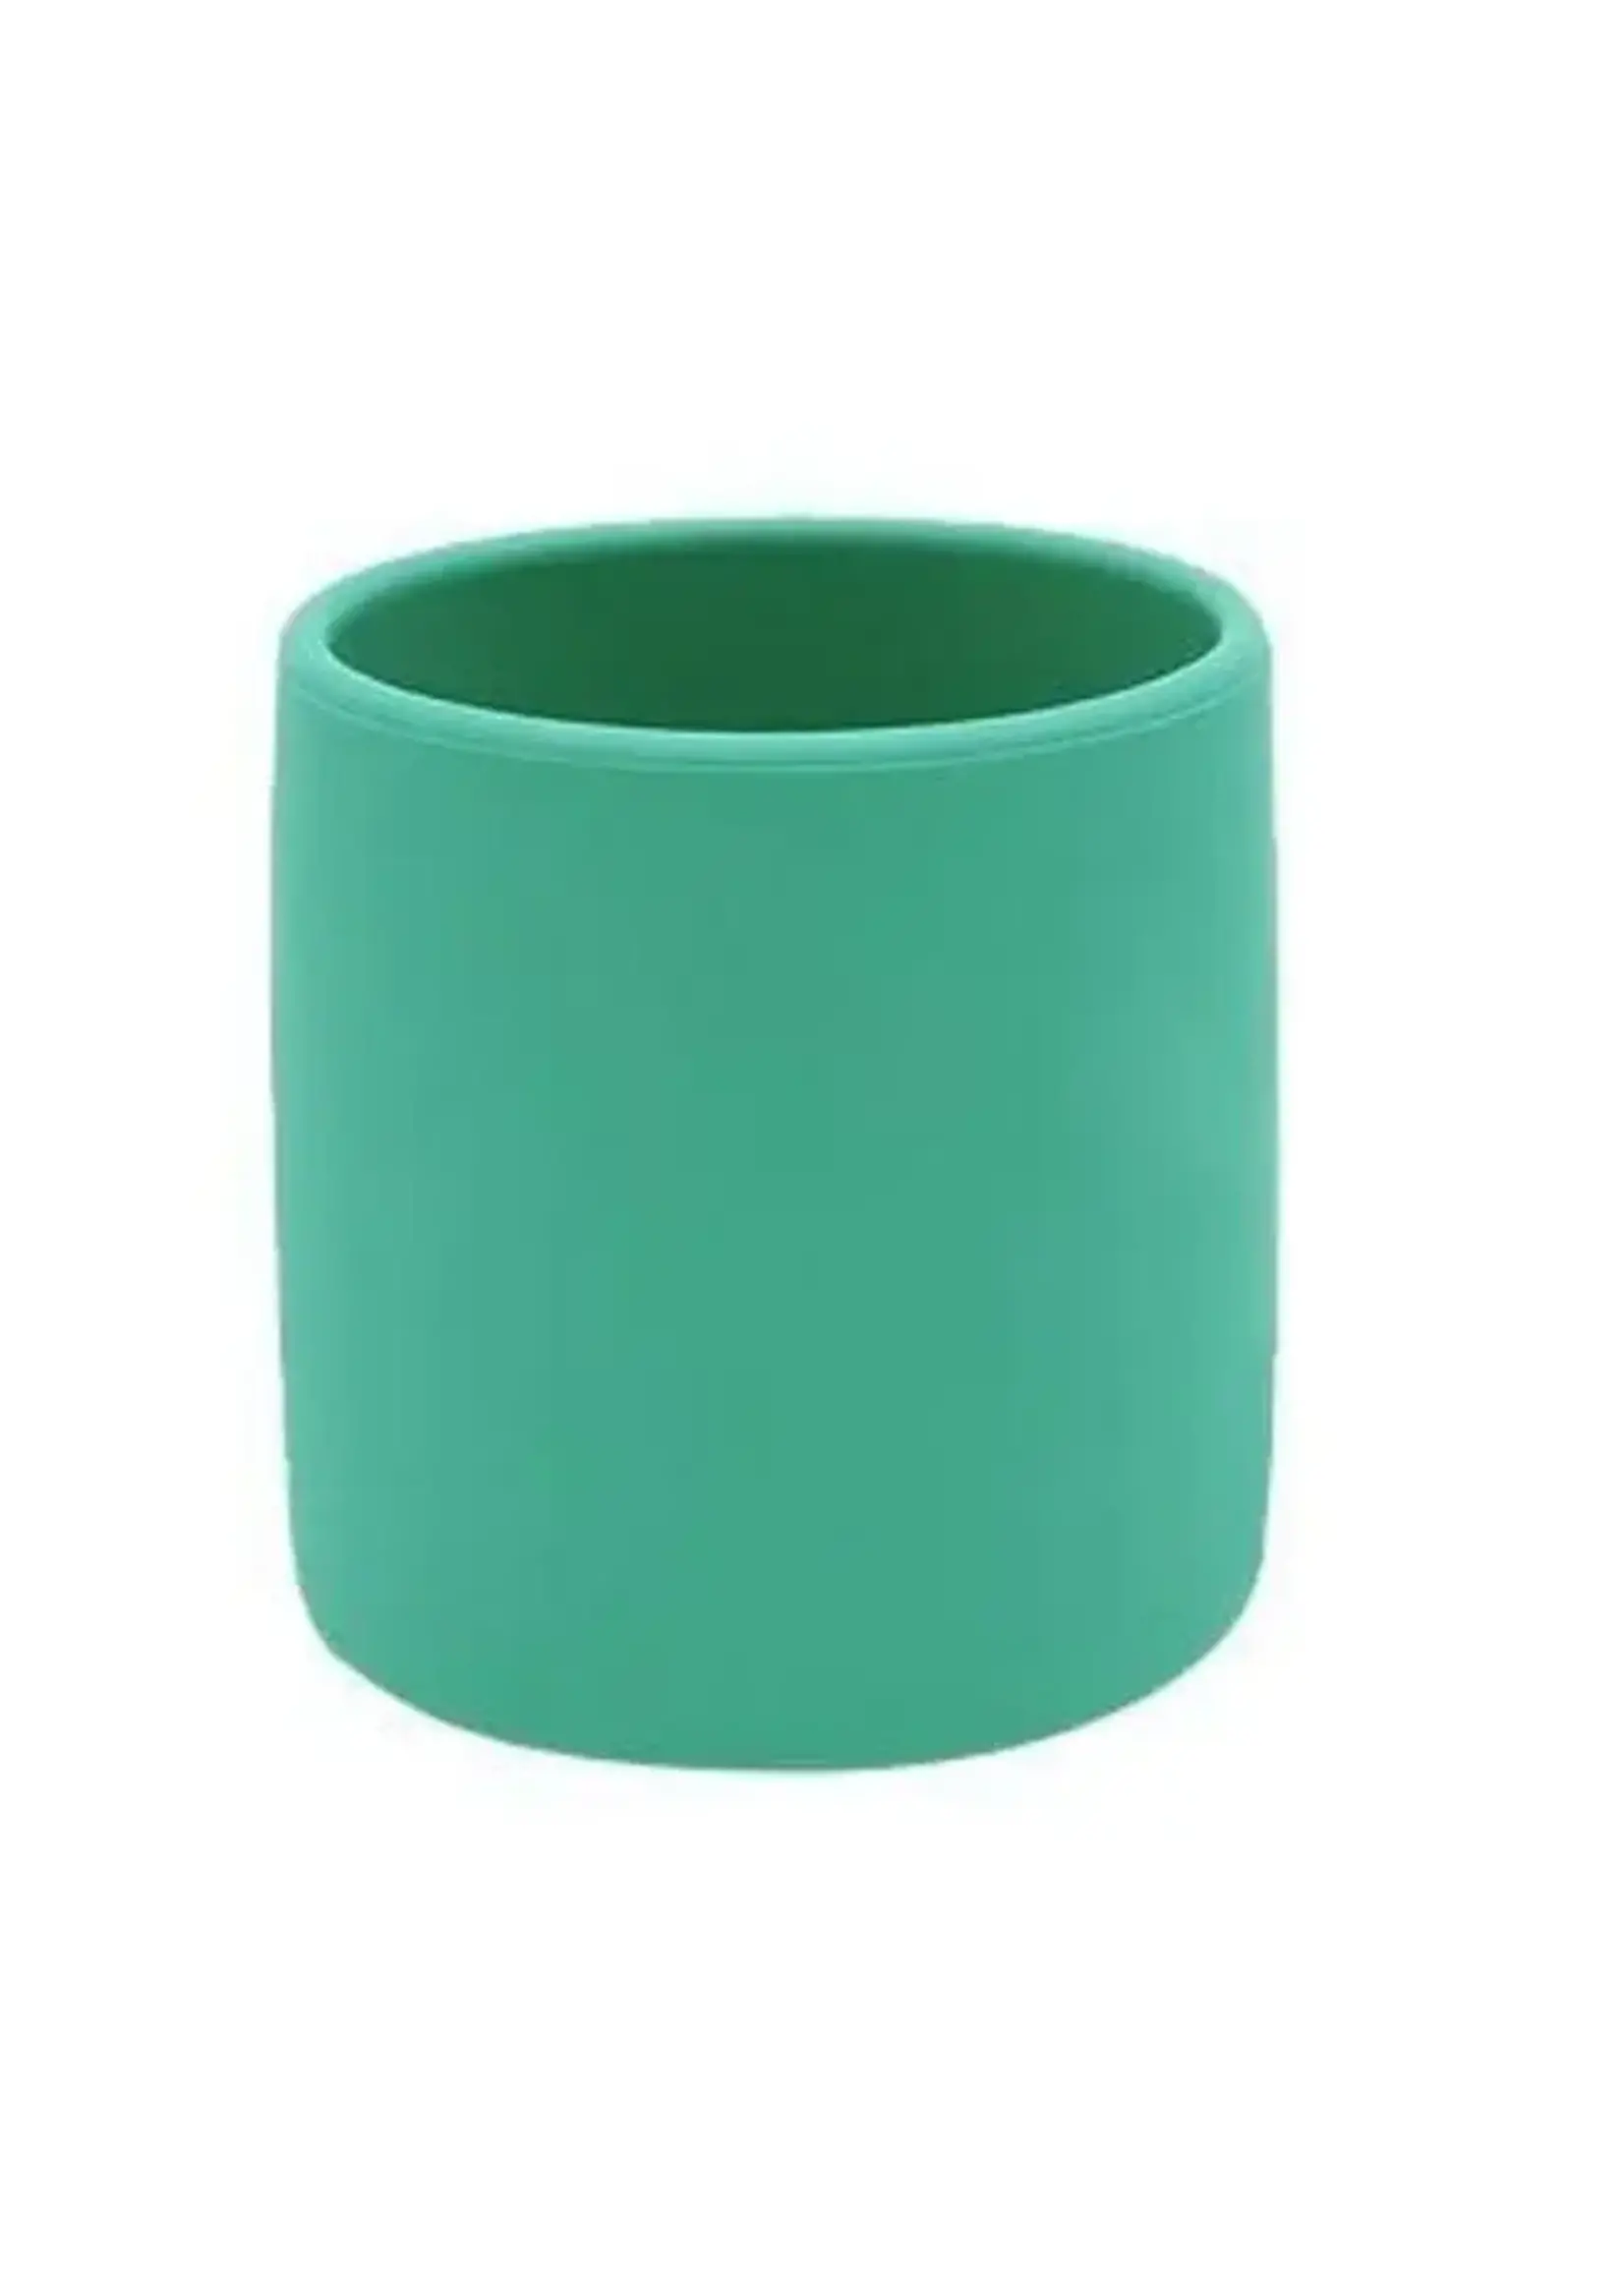 Minikoioi Minikoioi Green Mini Cup